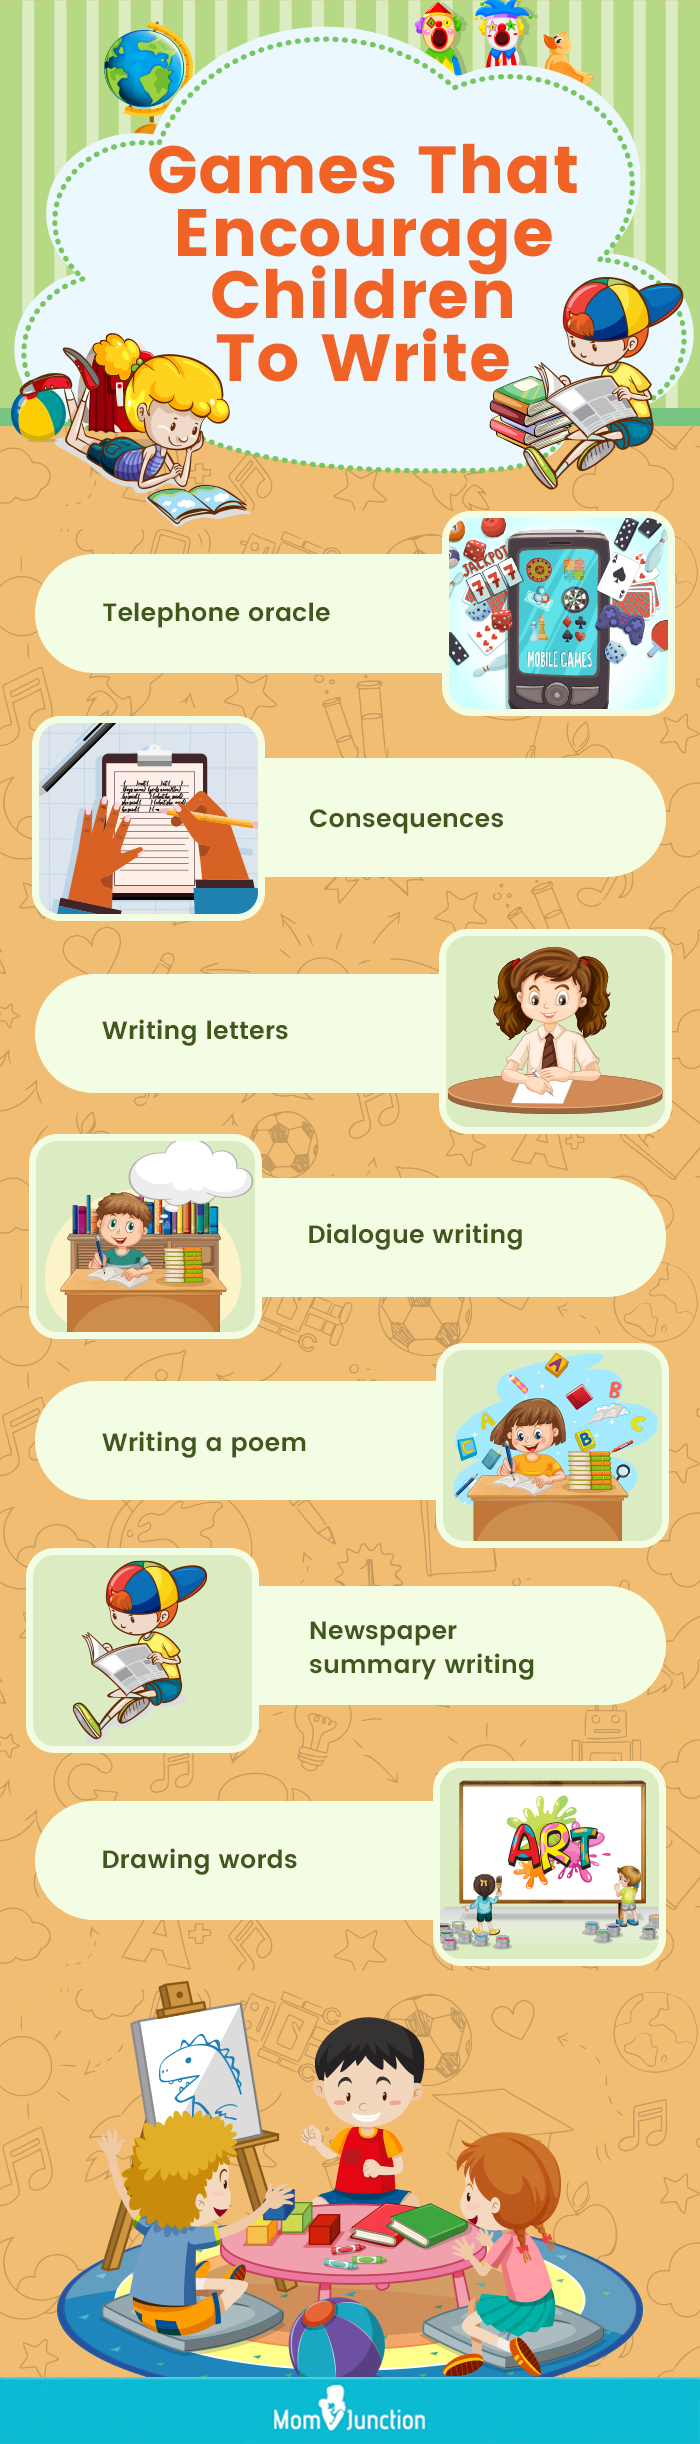 10 Fun Writing Activities for Kids to Improve Handwriting Skills